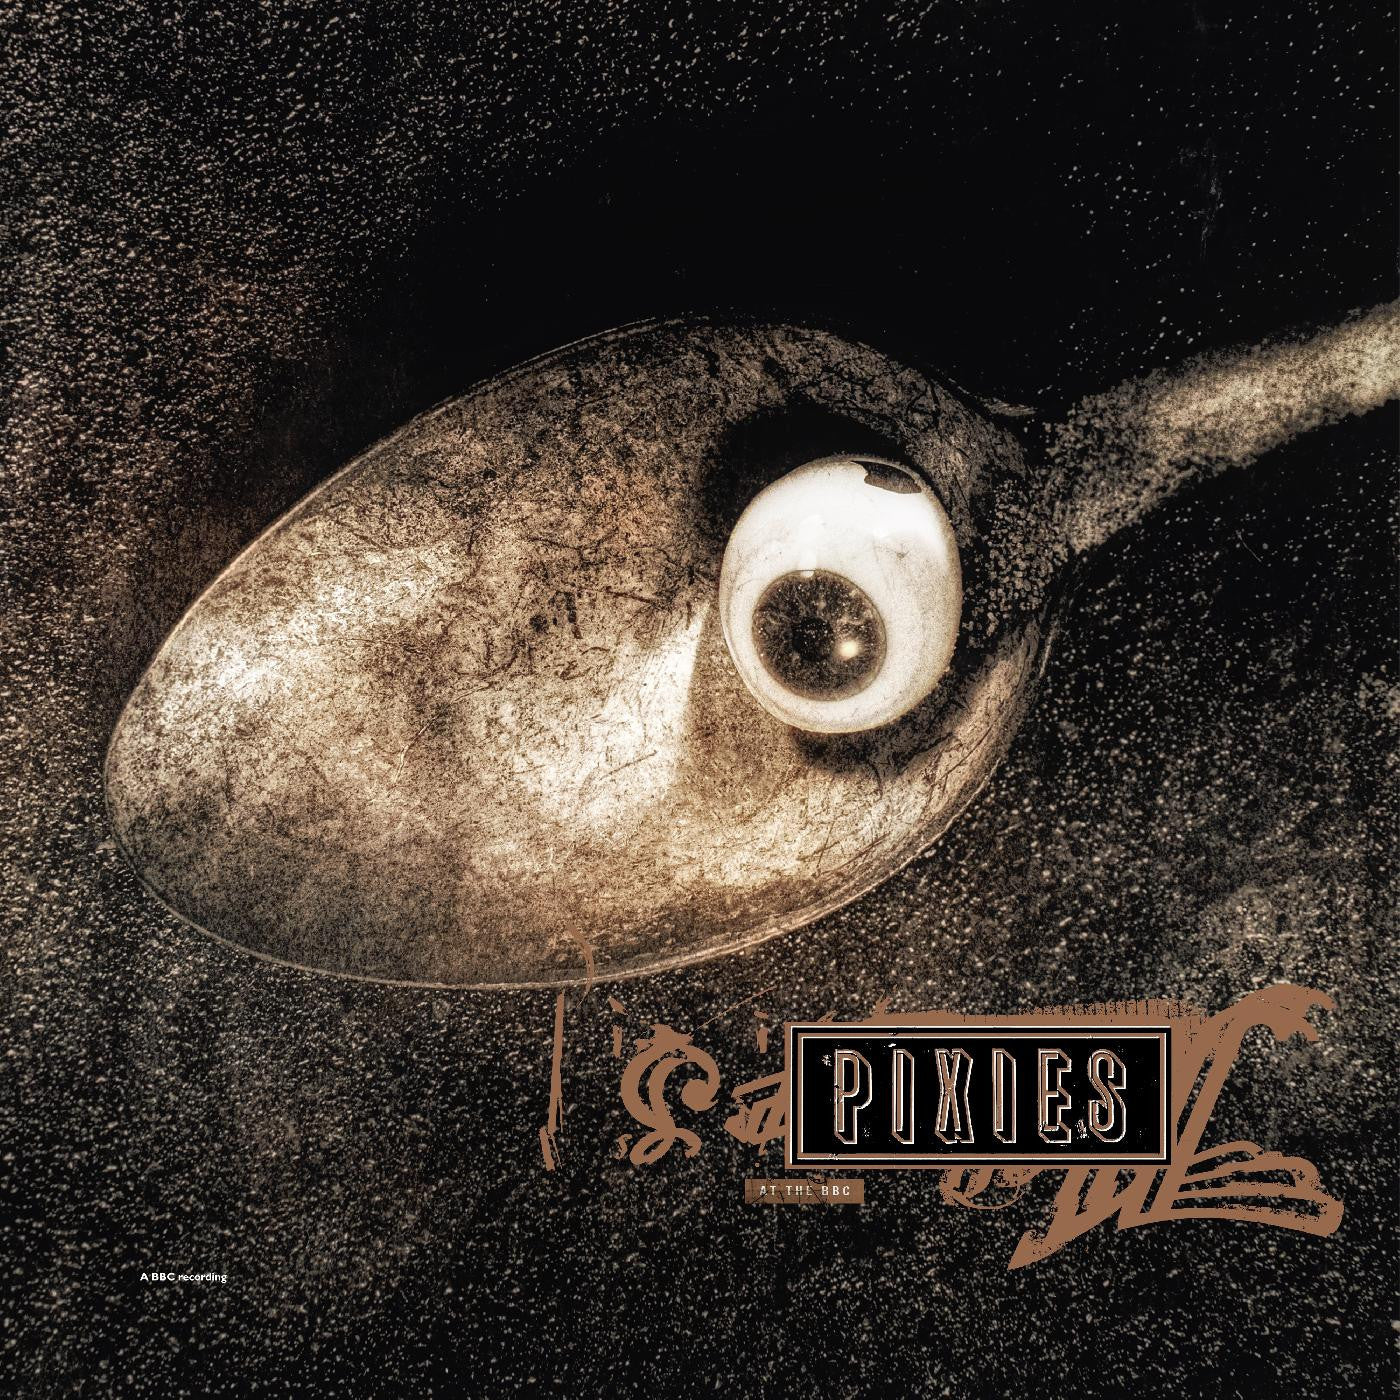 Order Pixies - Pixies at the BBC (3xLP Black Vinyl)